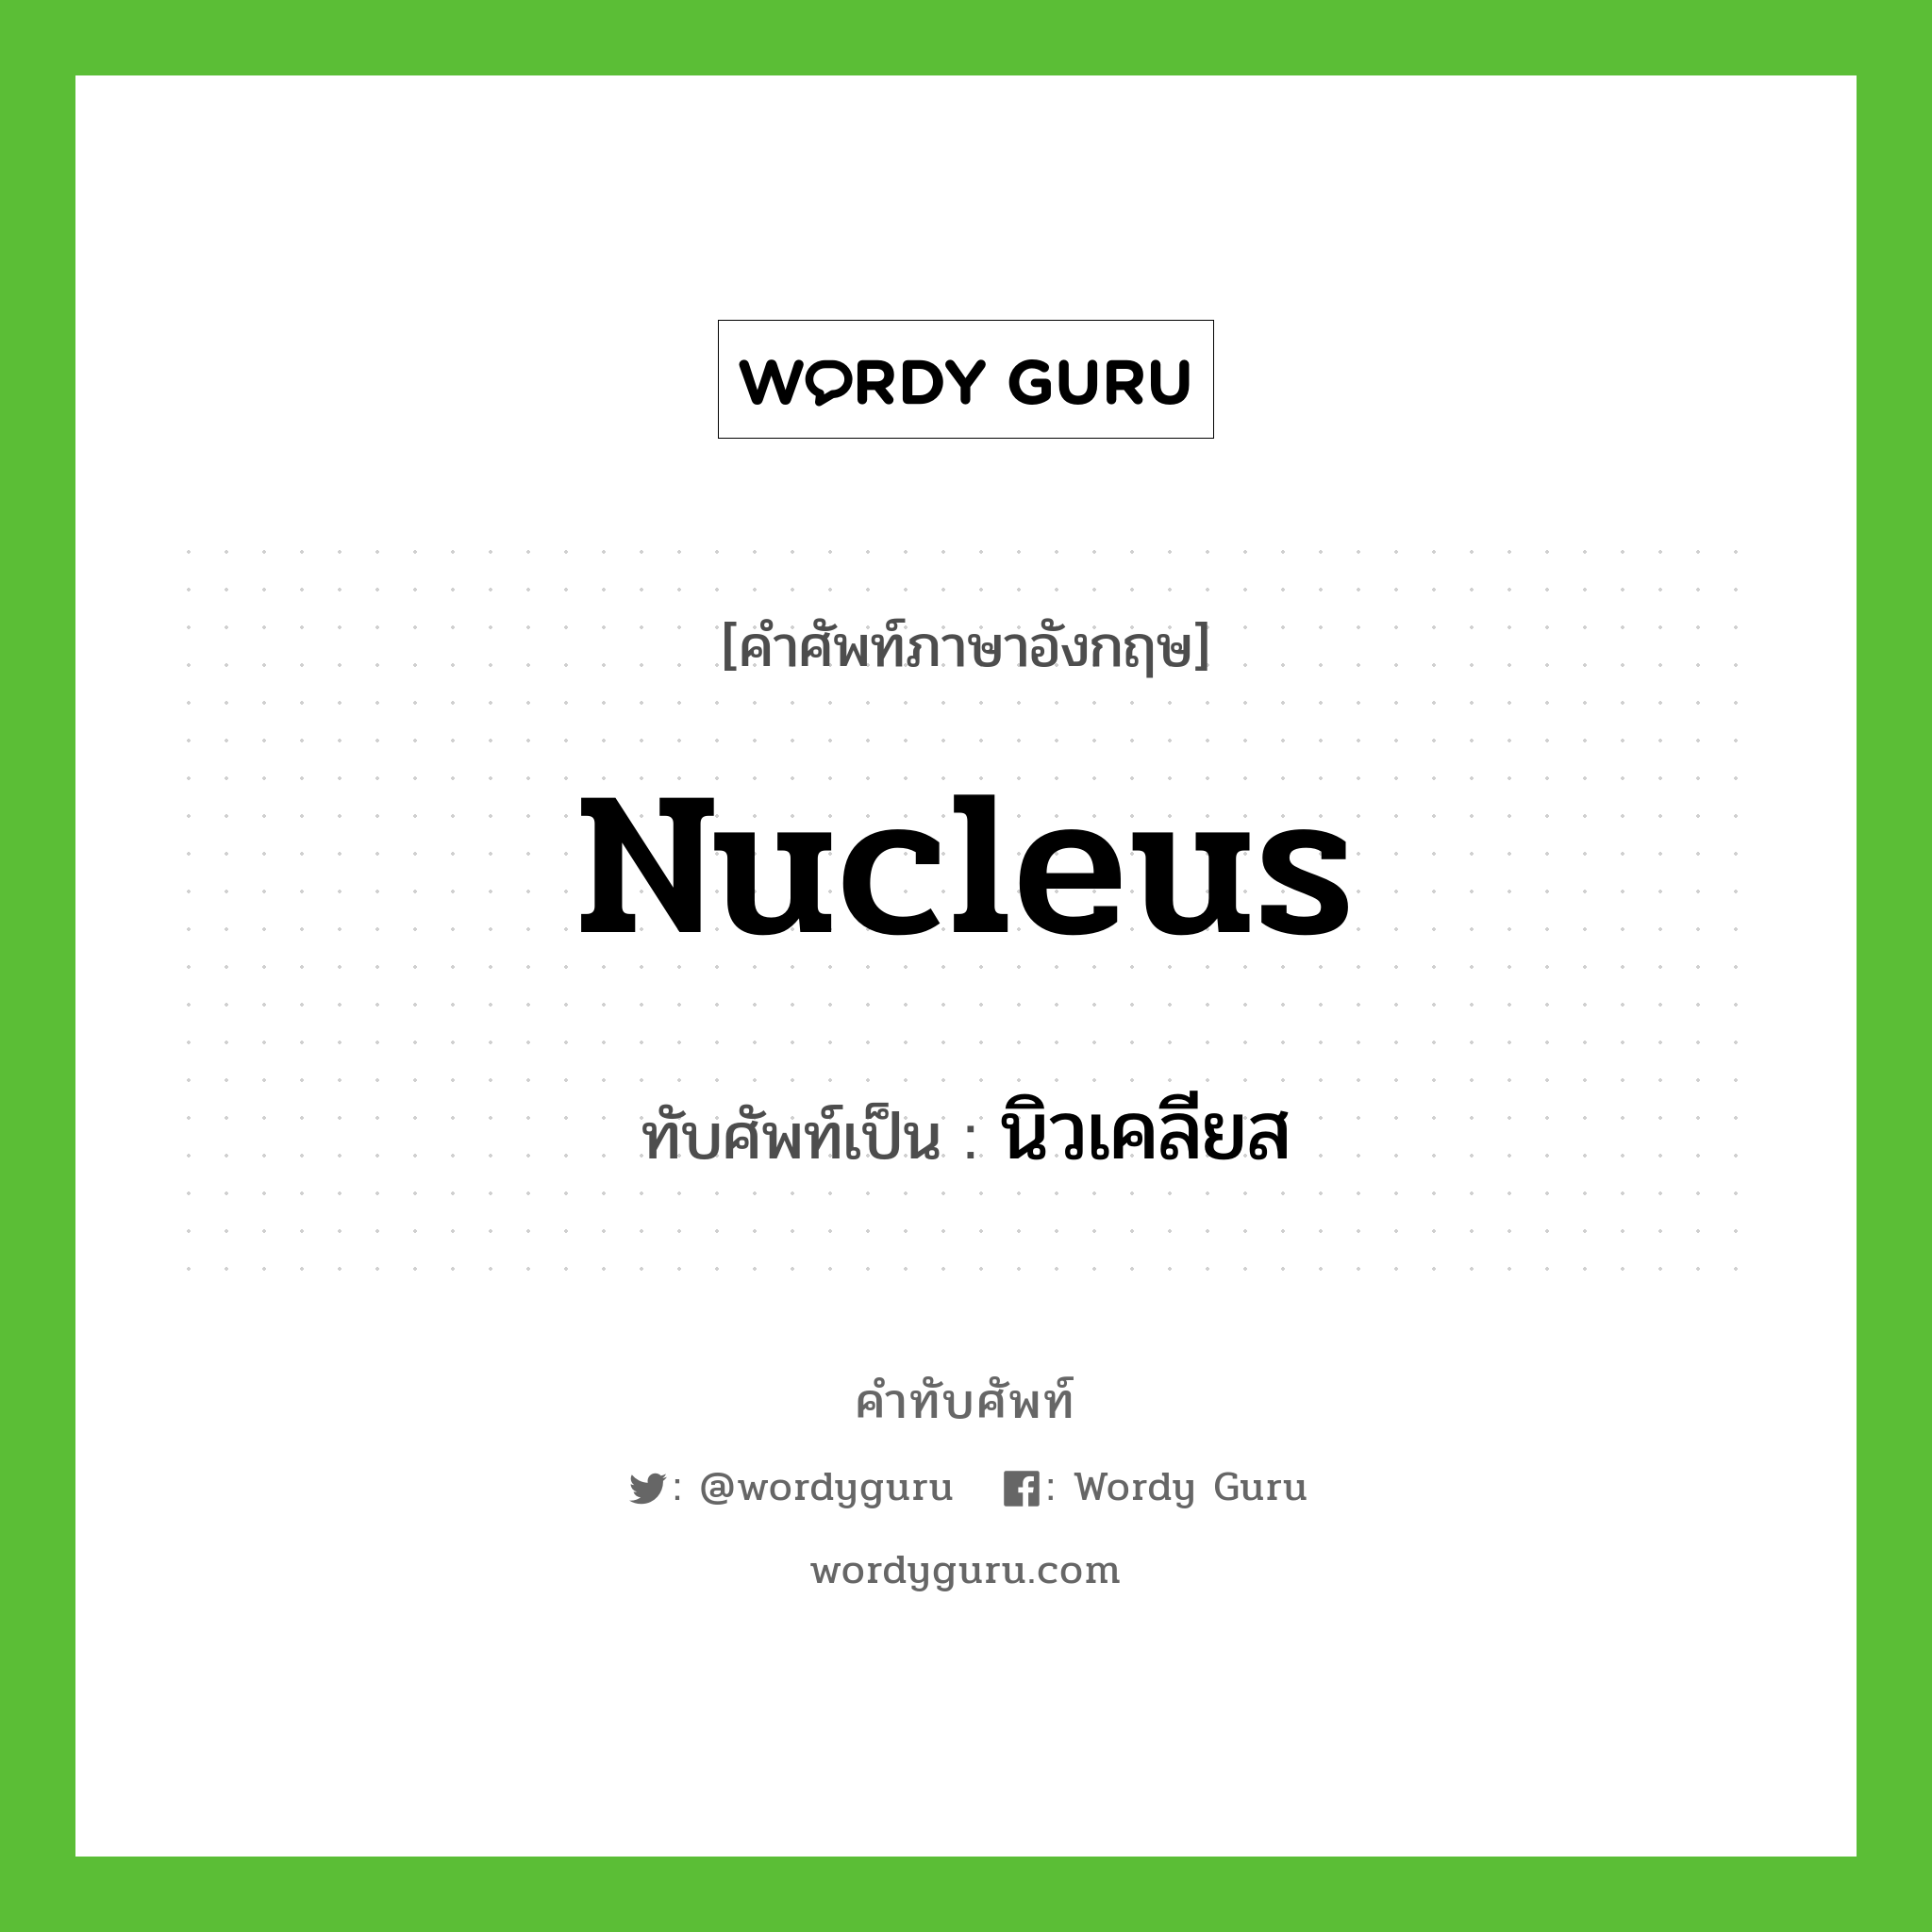 นิวเคลียส เขียนอย่างไร?, คำศัพท์ภาษาอังกฤษ นิวเคลียส ทับศัพท์เป็น nucleus